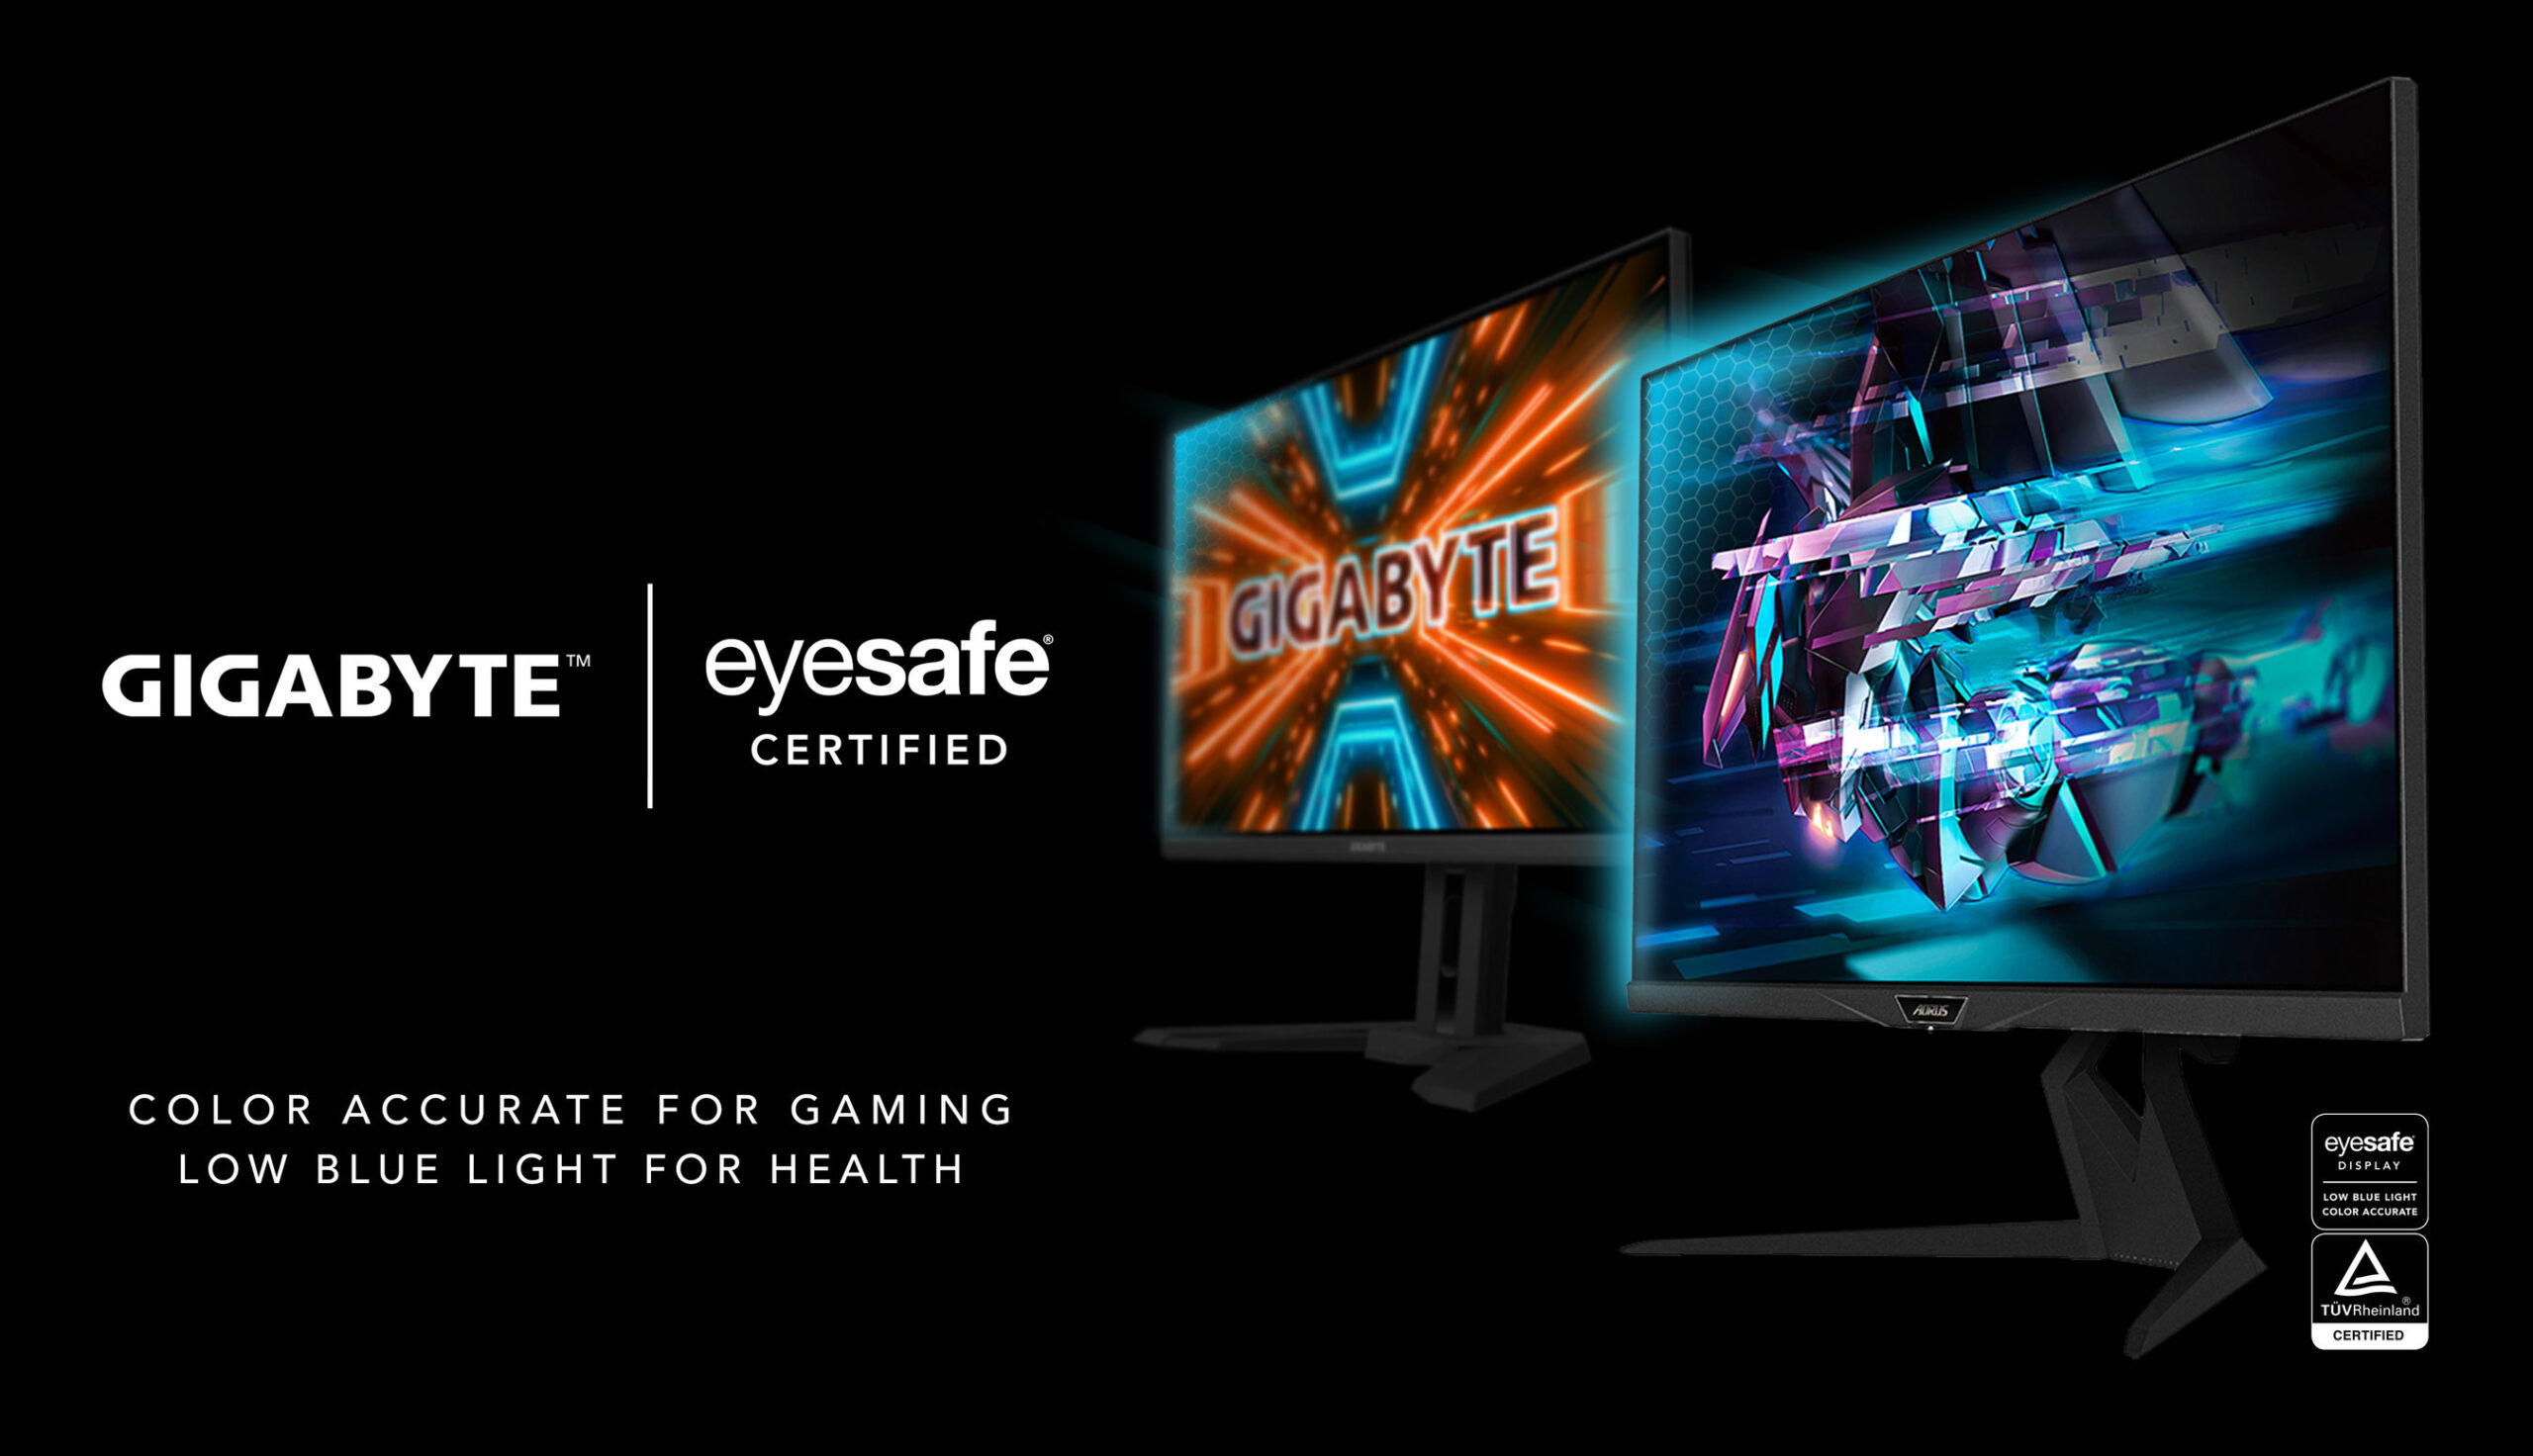 Eyesafe anunció que GIGABYTE ha certificado con éxito cinco monitores de juegos que cumplen con los Estándares de Visualización Eyesafe.